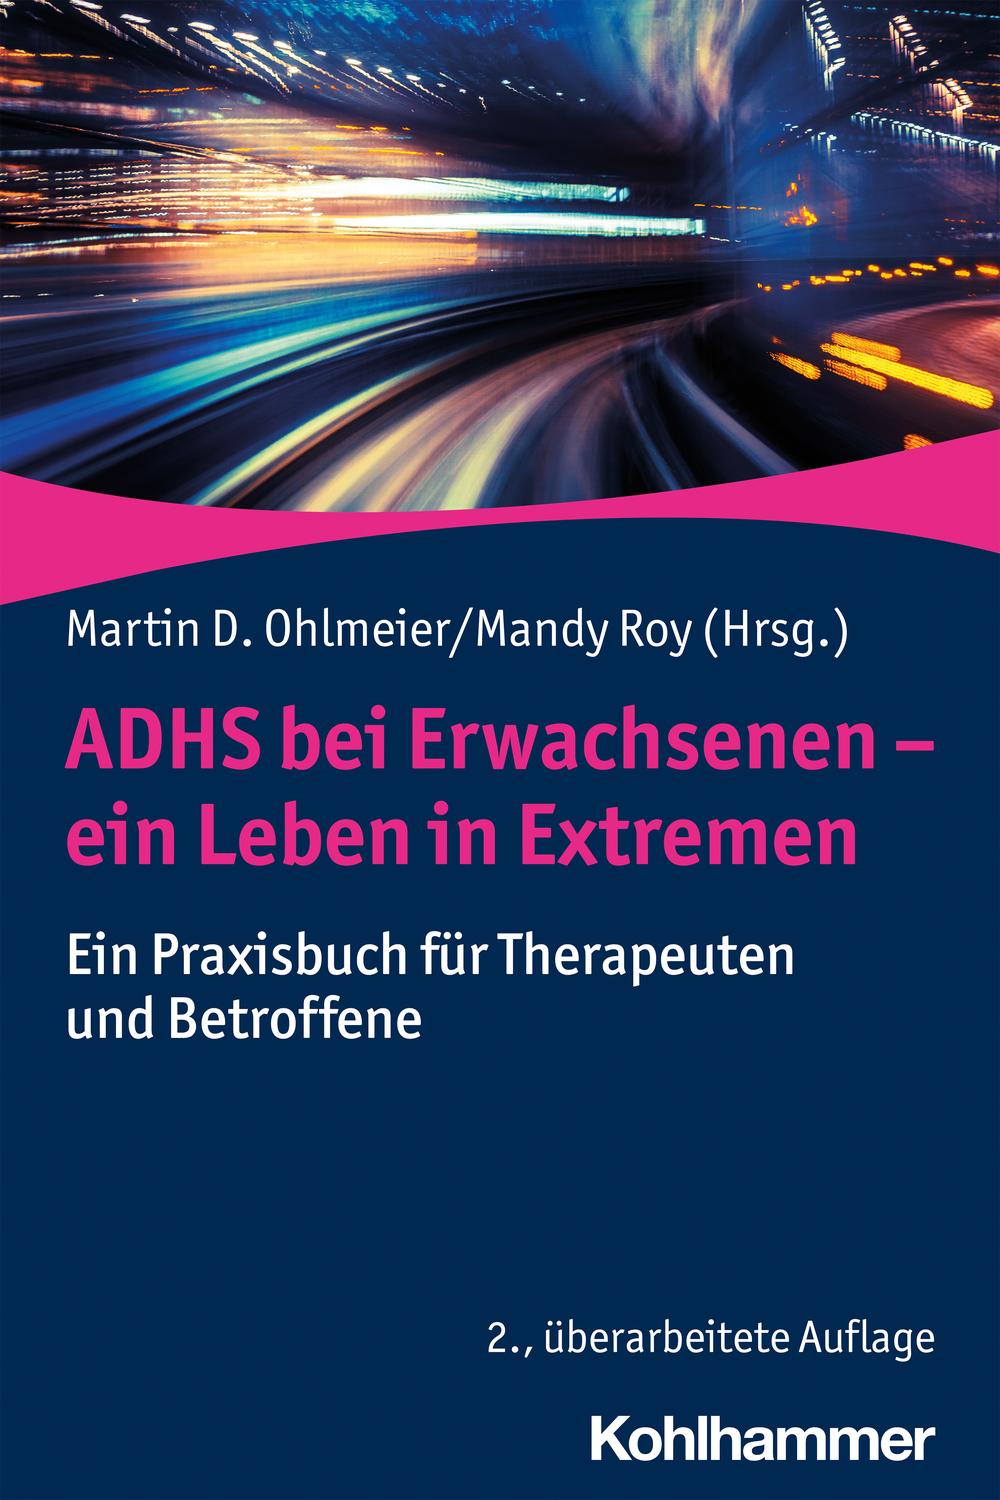 ADHS bei Erwachsenen - ein Leben in Extremen - ,,Martin D. Ohlmeier, Mandy Roy